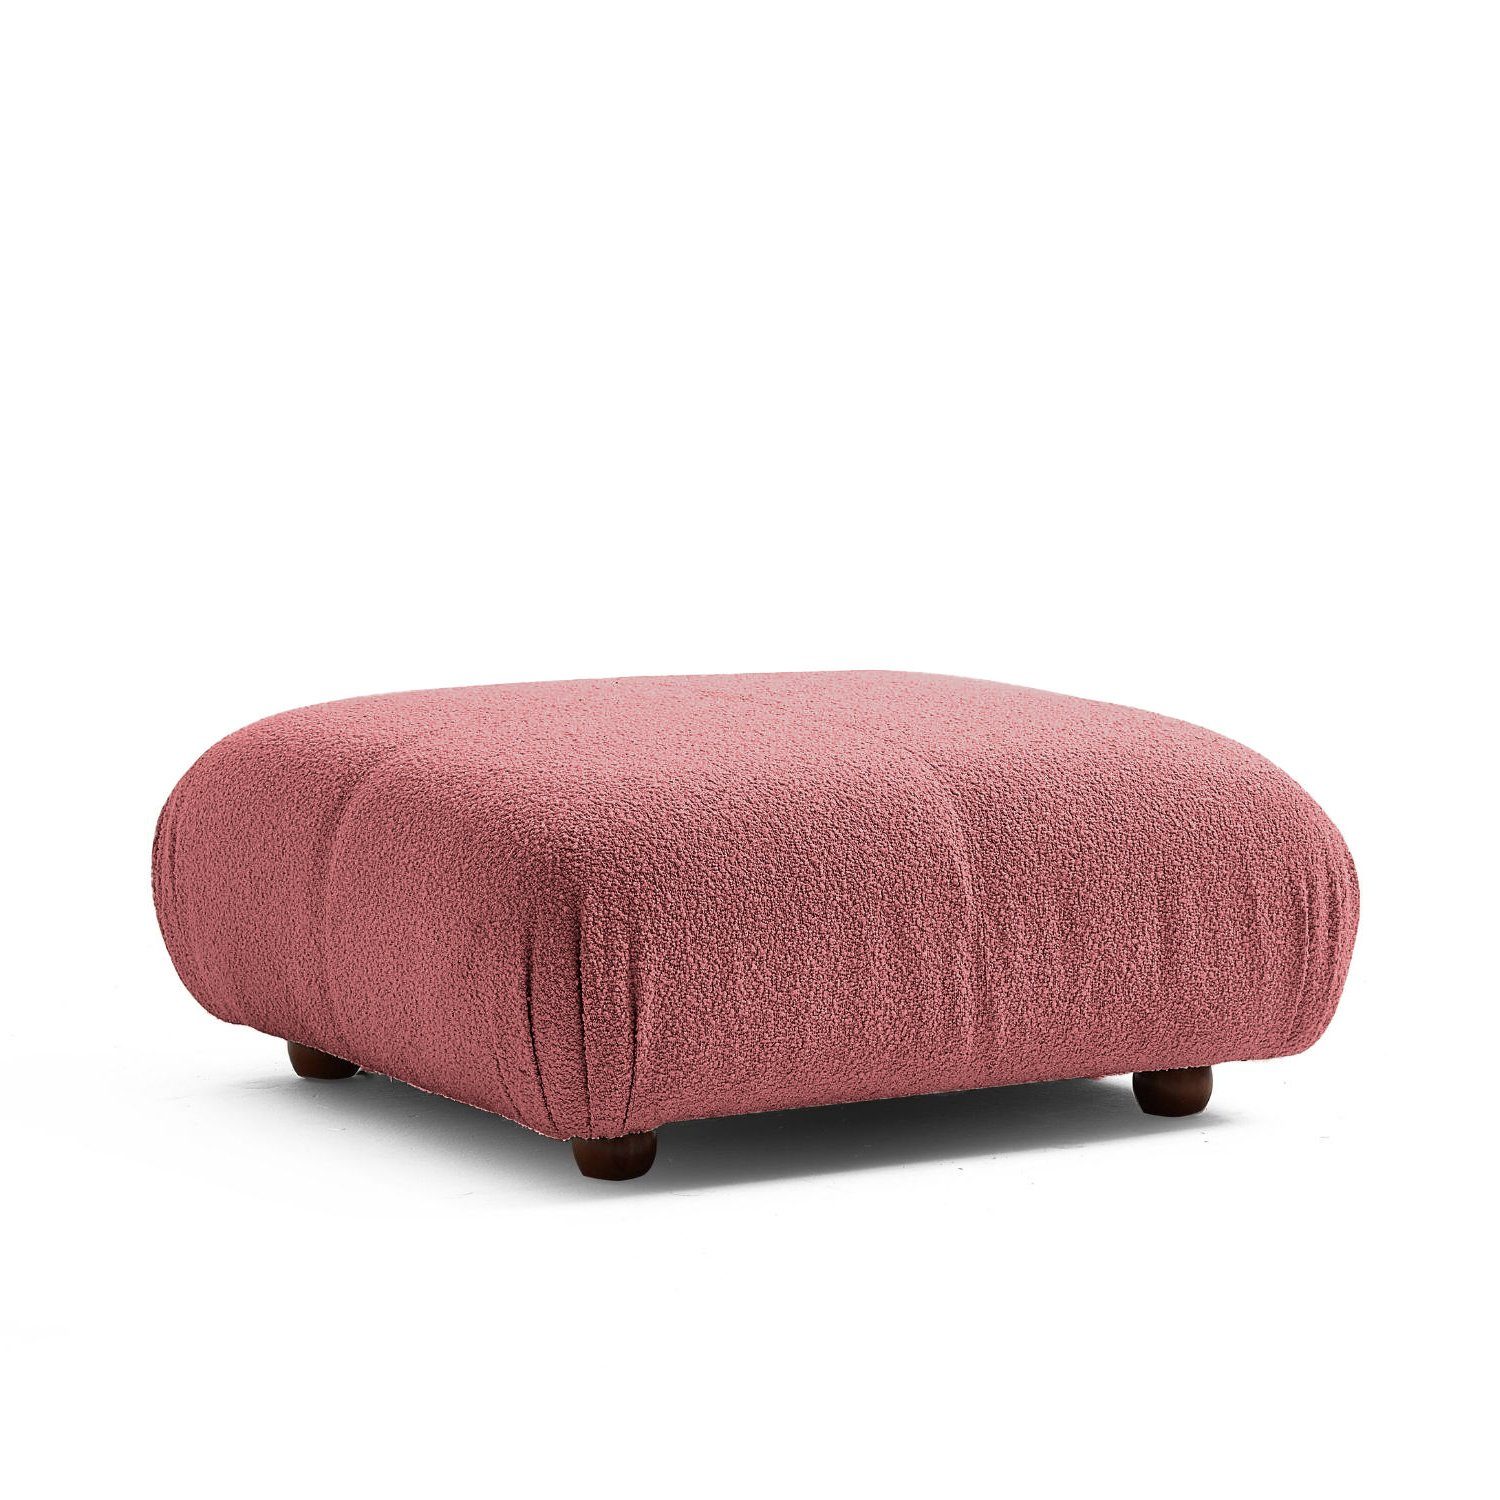 Touch me Sofa Knuffiges Sitzmöbel neueste Generation aus Komfortschaum Rotbraun-Lieferung und Aufbau im Preis enthalten!